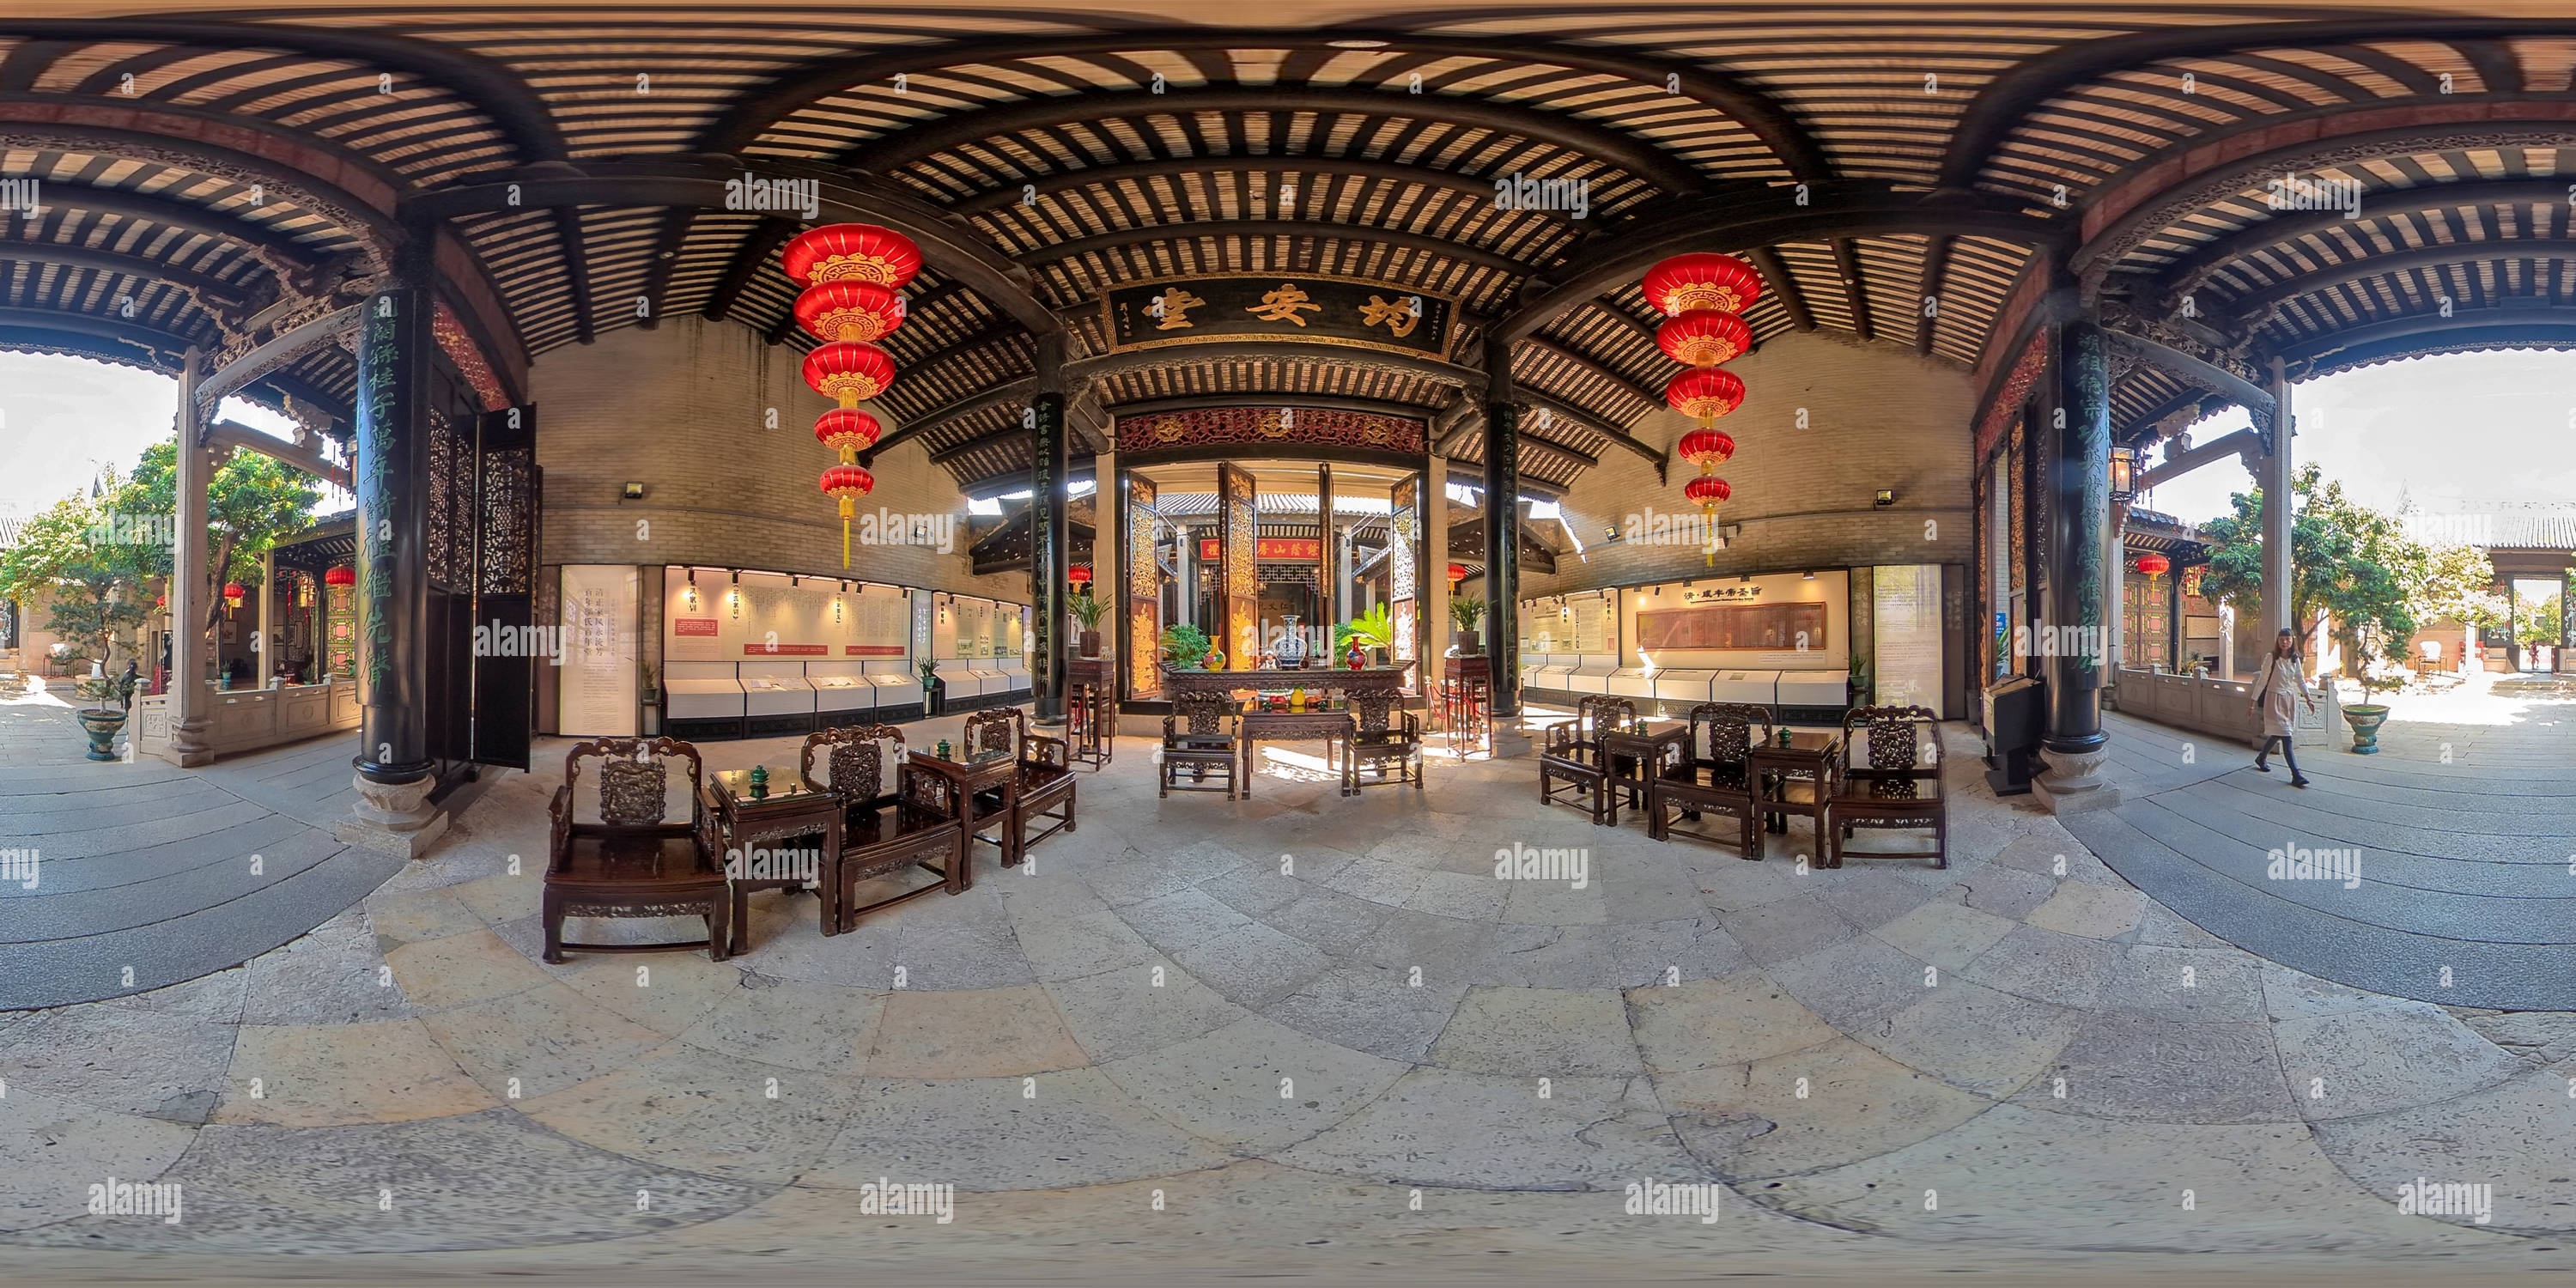 360 Grad Panorama Ansicht von Wohnzimmer im alten südchinesischen Stil